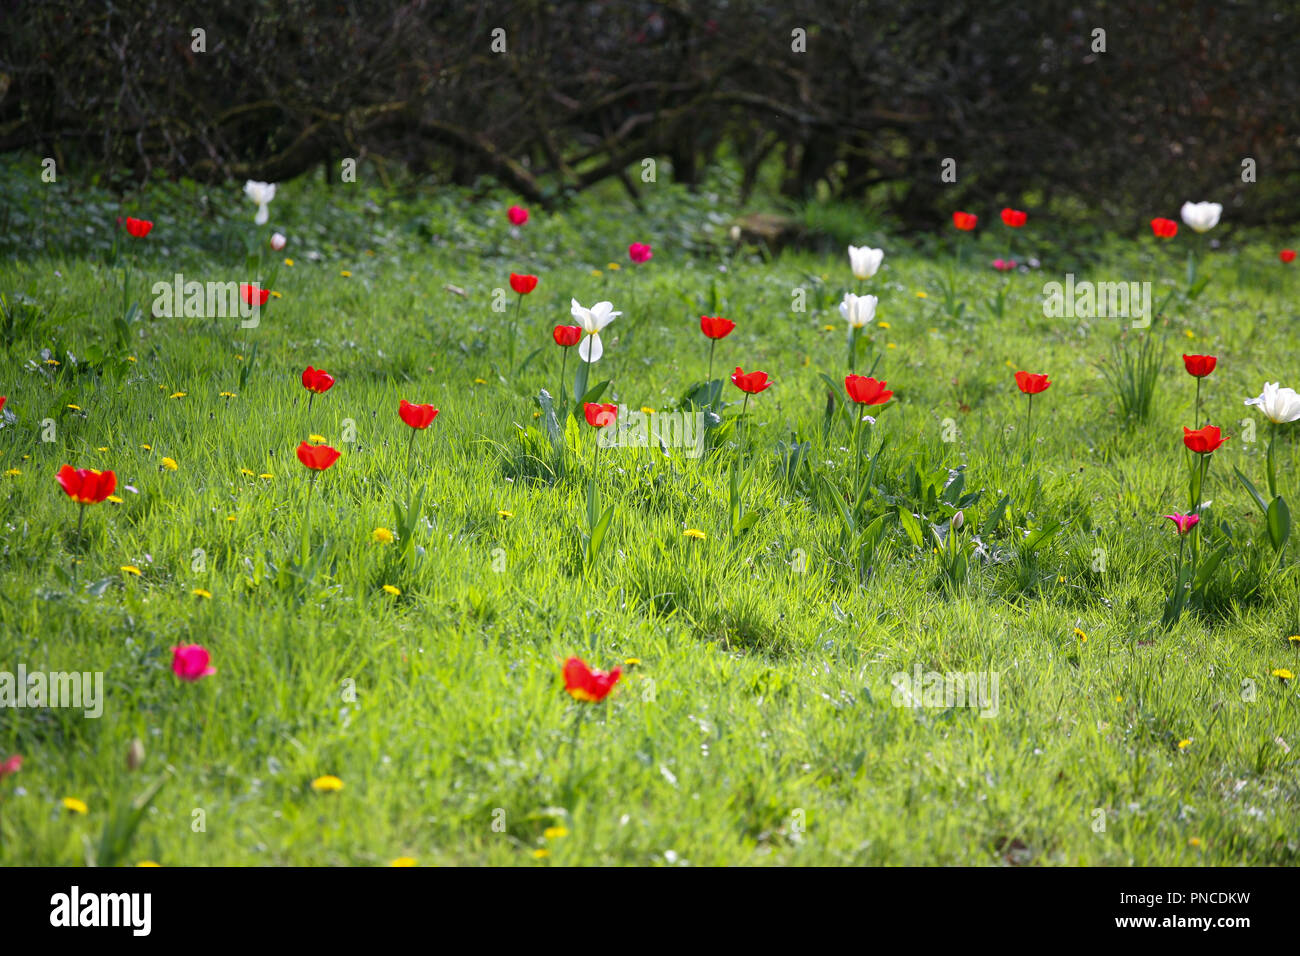 Tulipes rouges (Tulipa spp.) dans un pré herbeux, le printemps ! Banque D'Images